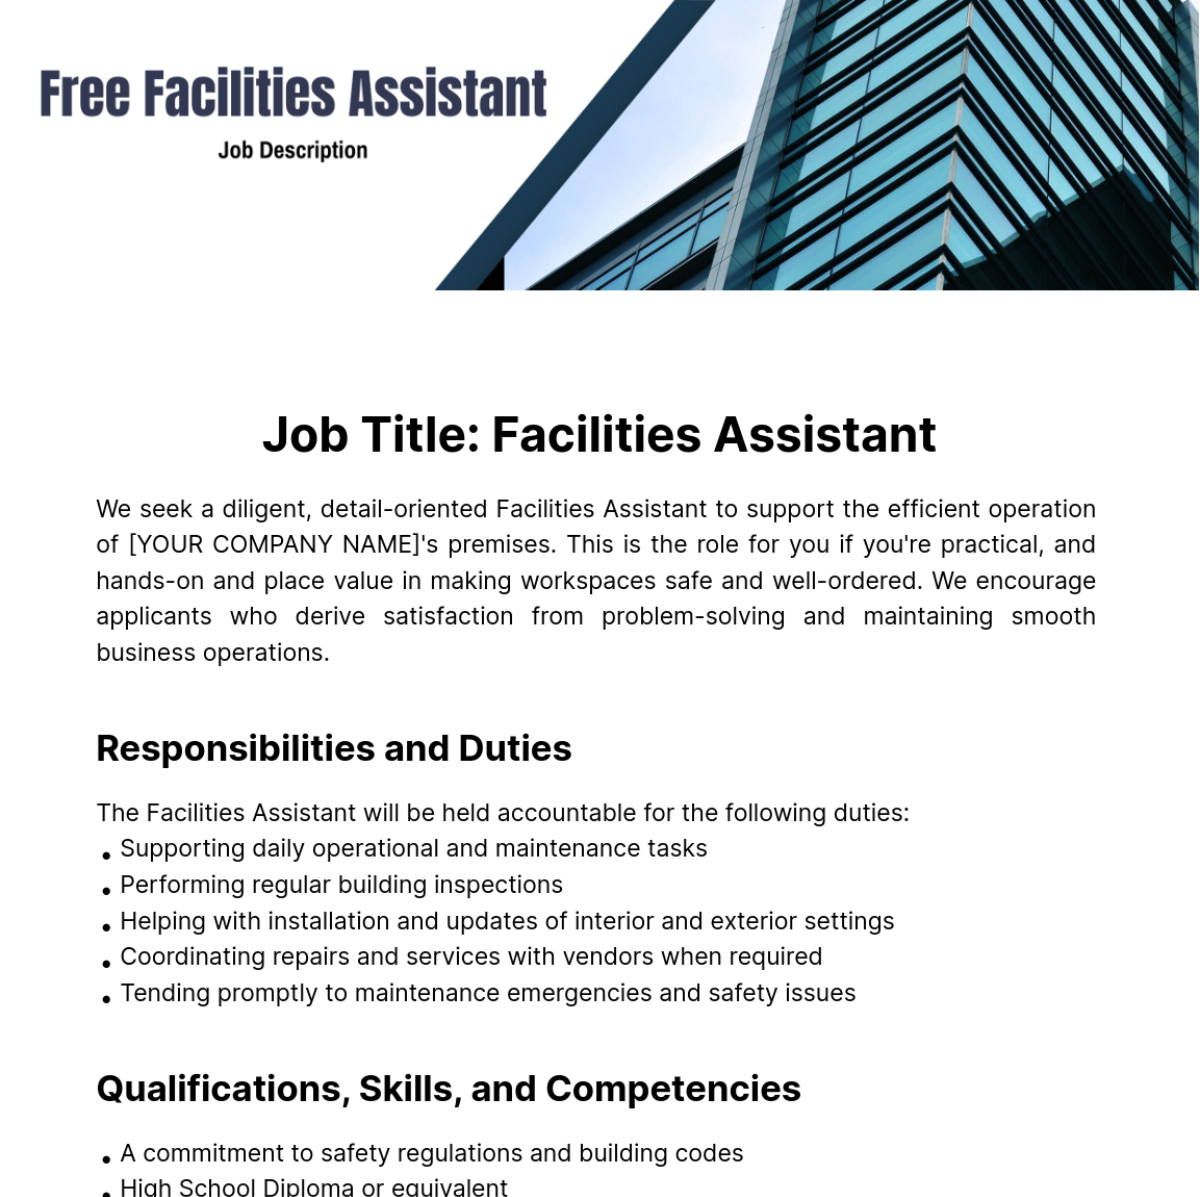 Free Facilities Assistant Job Description Template